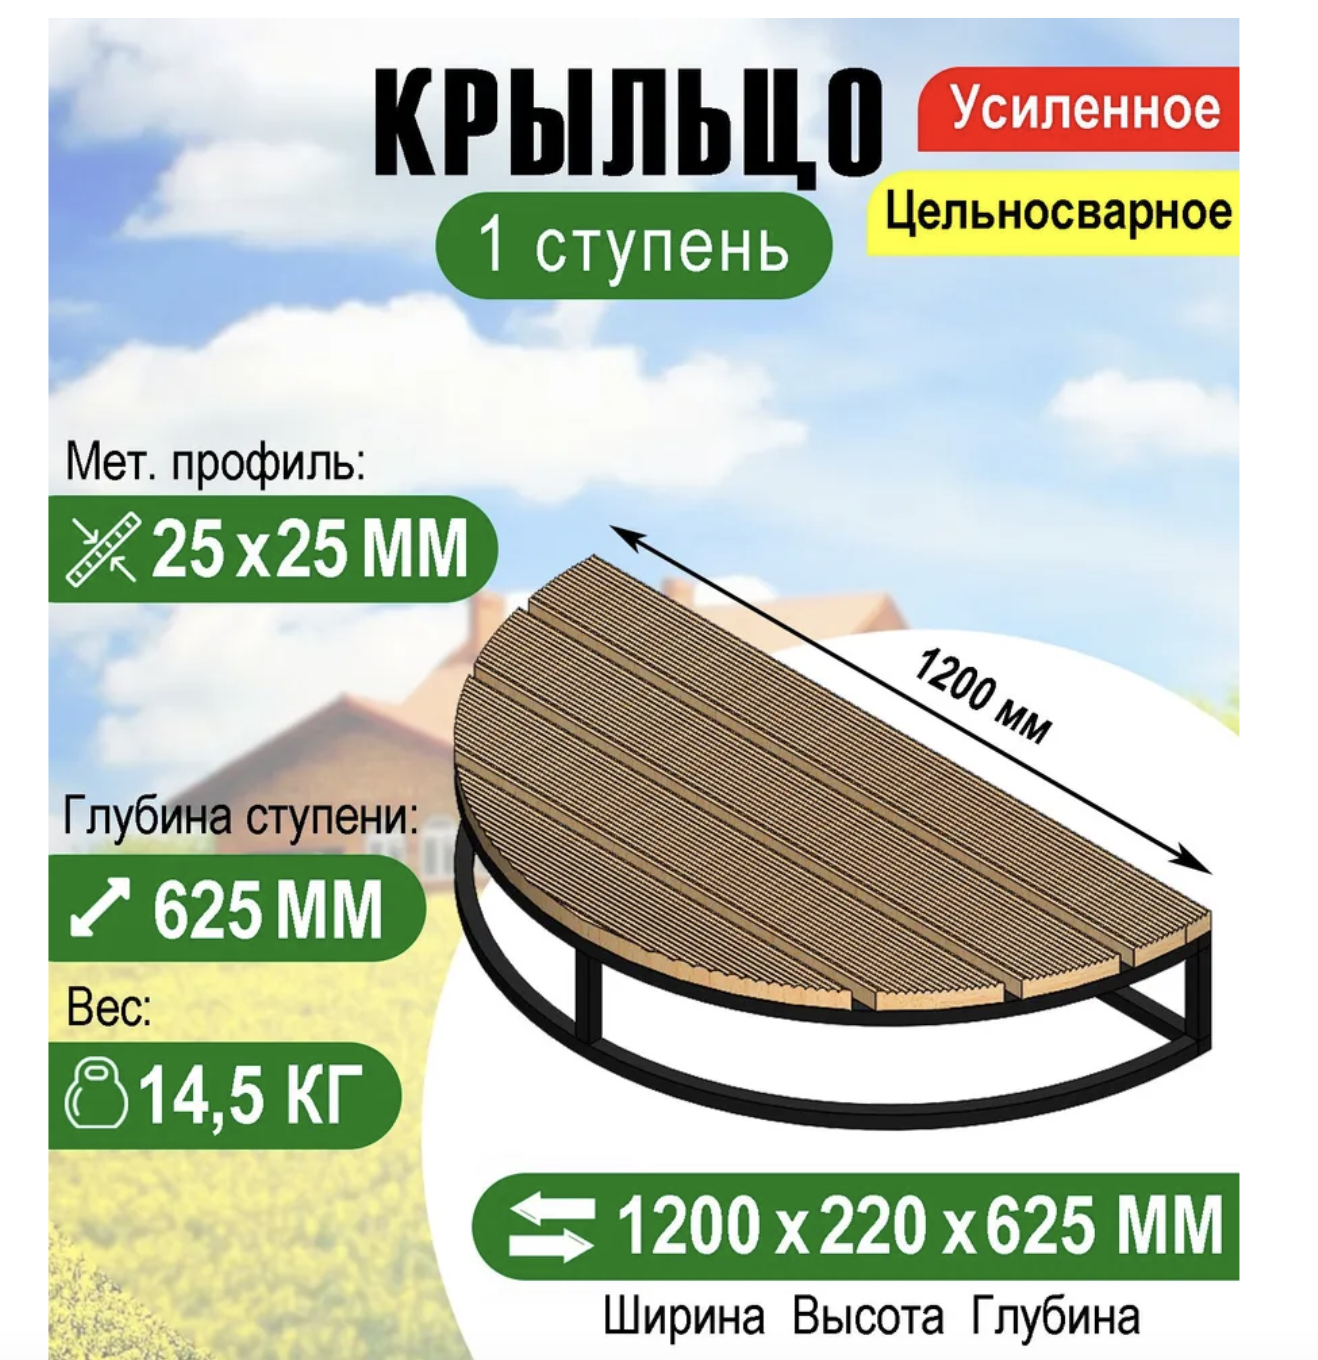 Купить крыльцо площадку к дому в Украине с террасной доской